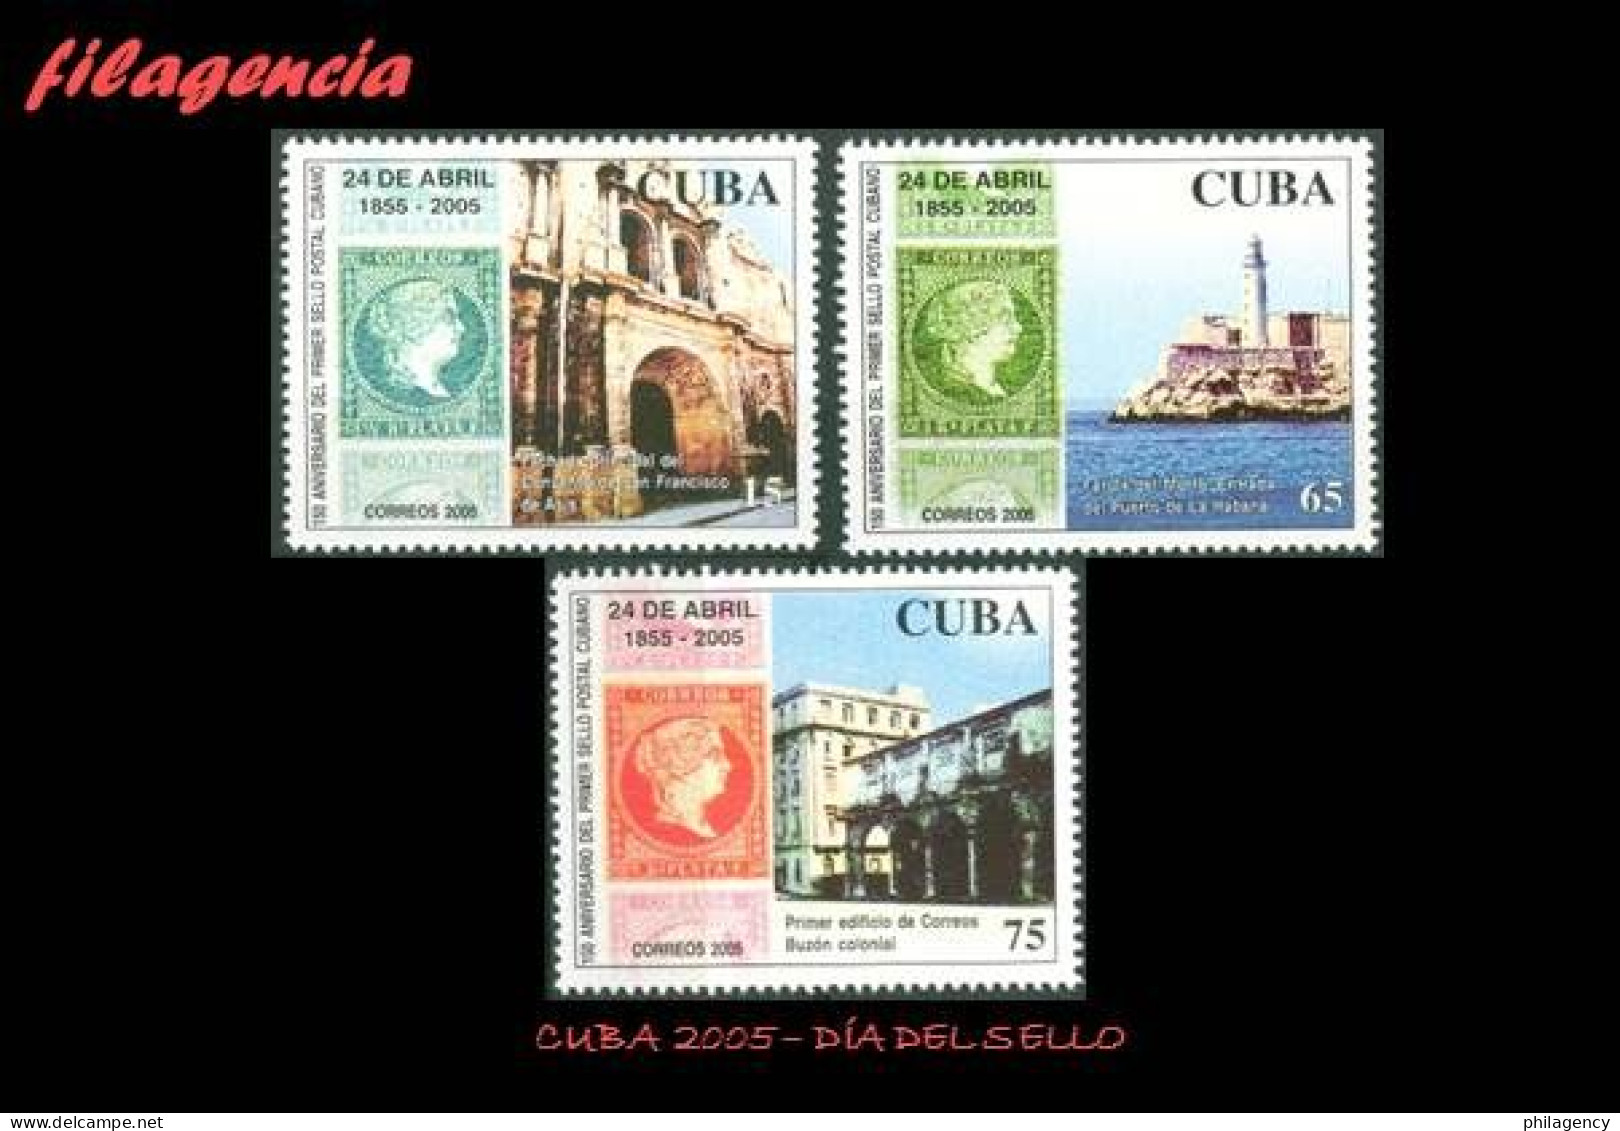 CUBA MINT. 2005-14 DÍA DEL SELLO CUBANO. PRIMERA EMISIÓN DE SELLOS CIRCULADOS EN CUBA - Nuevos